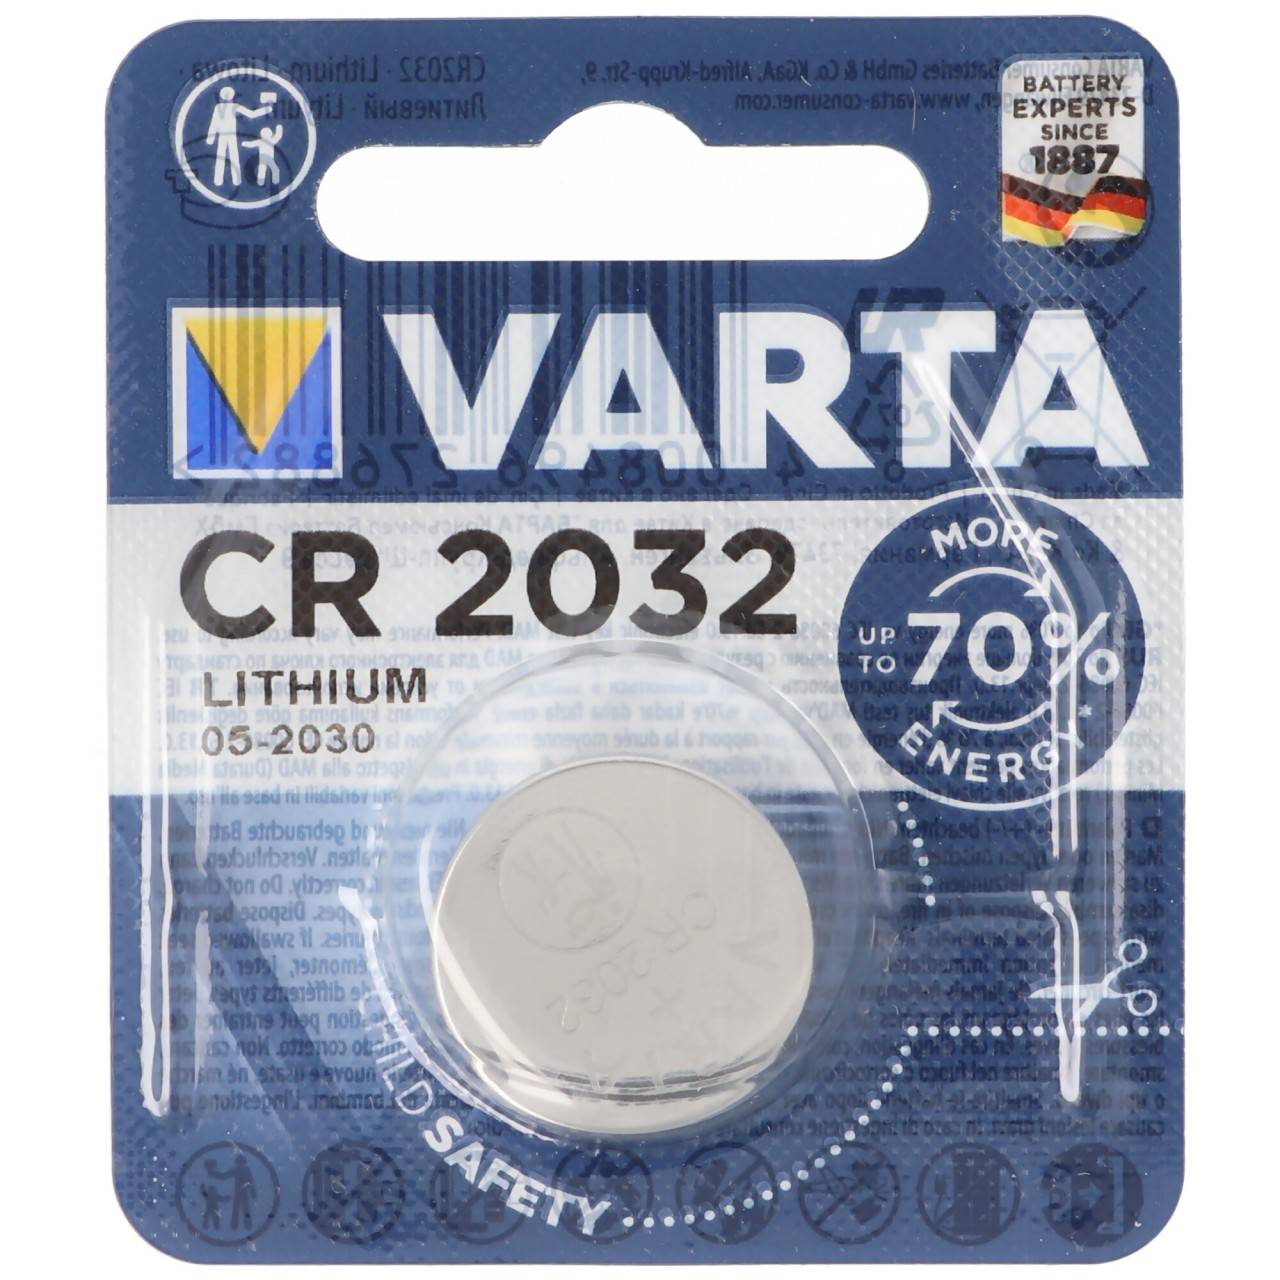 aus 2021 * 20x Varta CR2032 DL2032 BR 2032 Knopfzellen Batterien 20 Stück NEU 